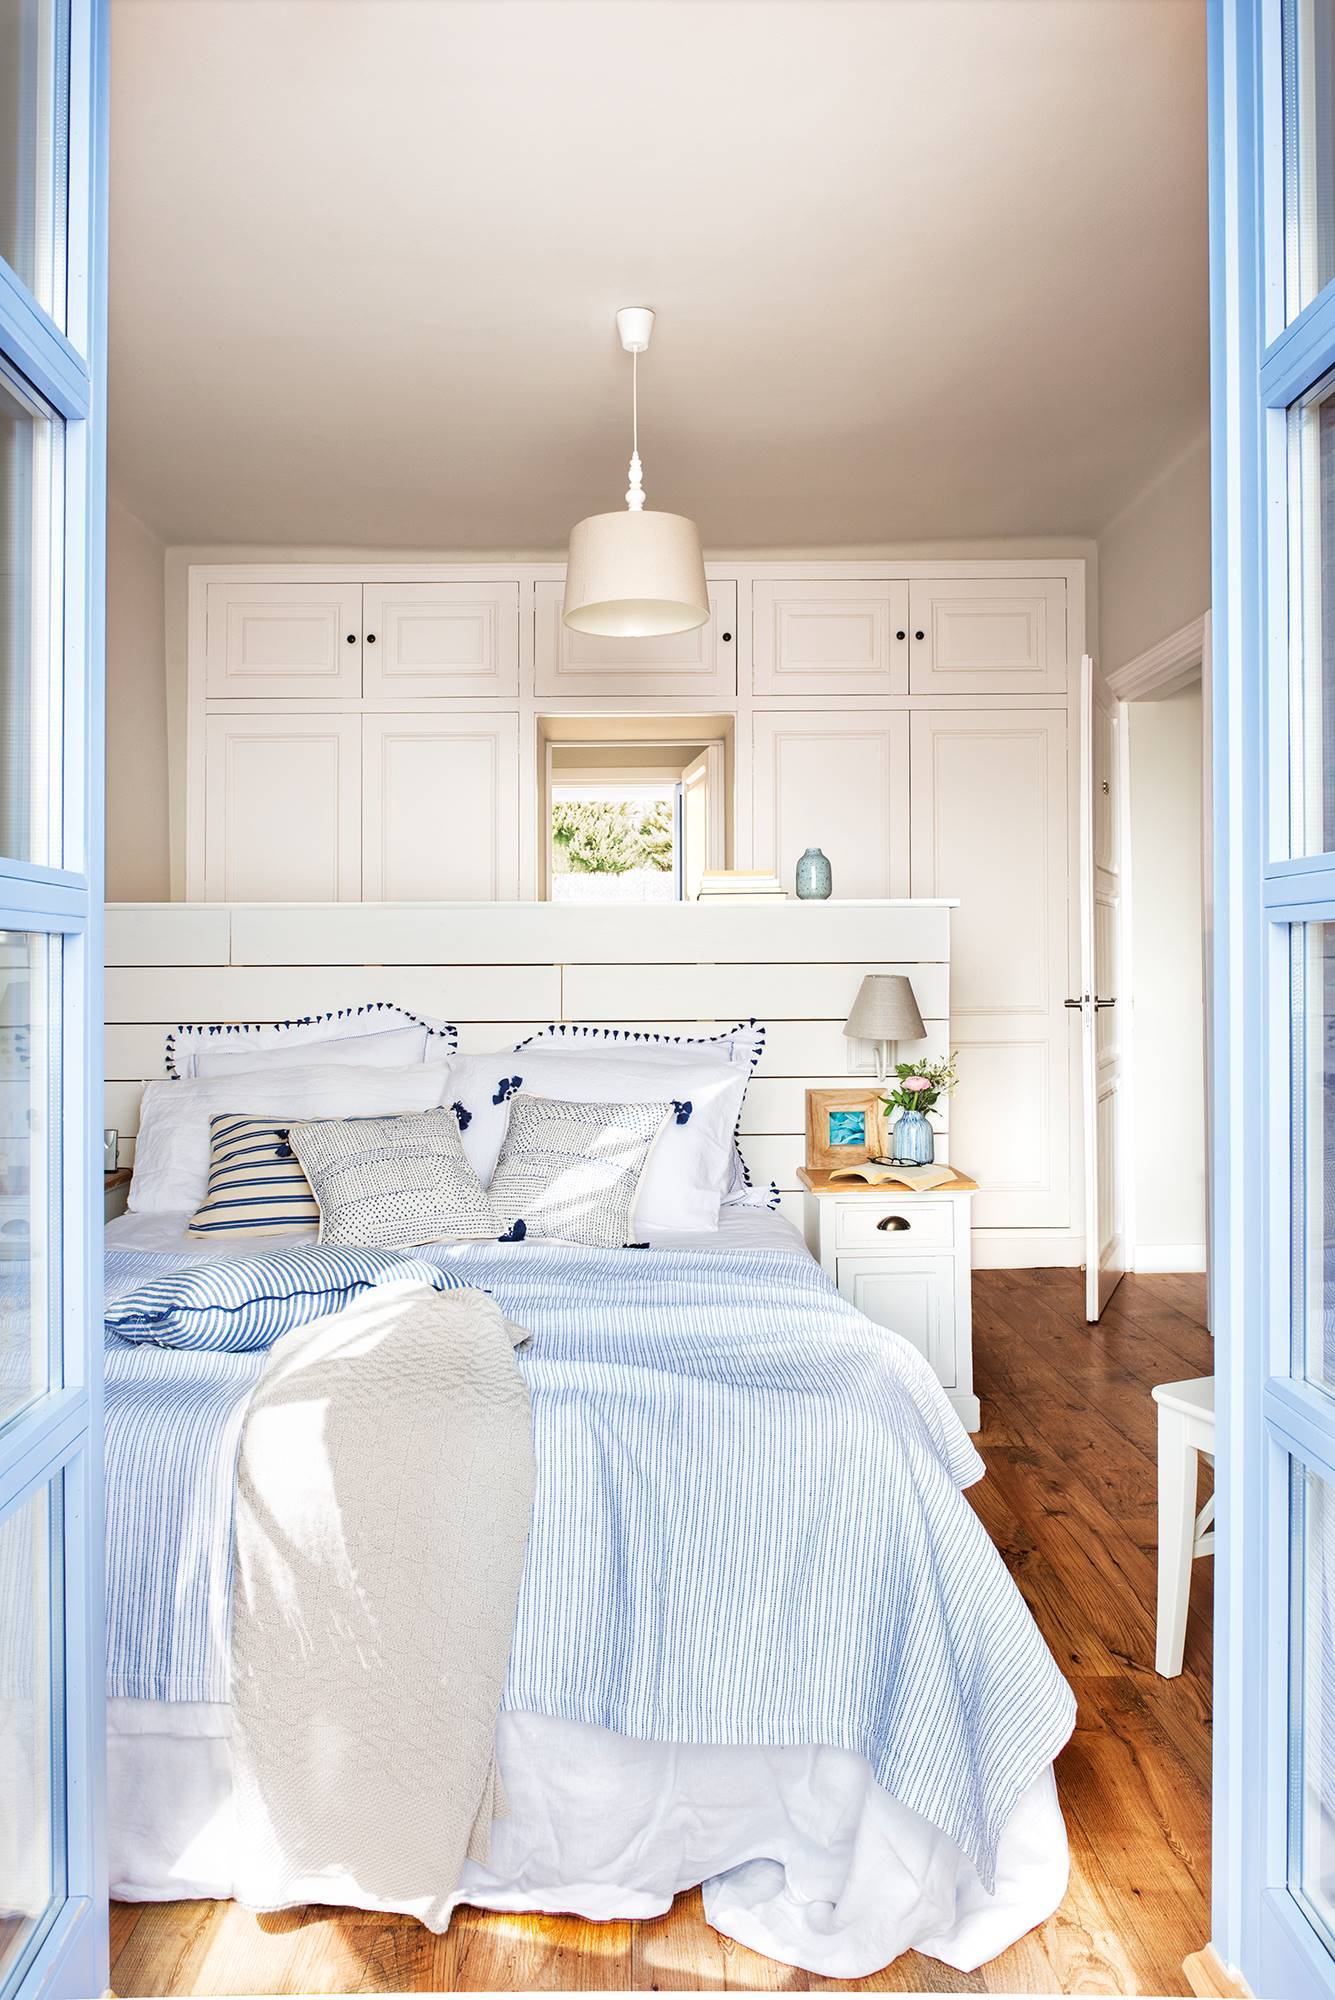 Dormitorio de estilo mediterráneo en blanco y azul